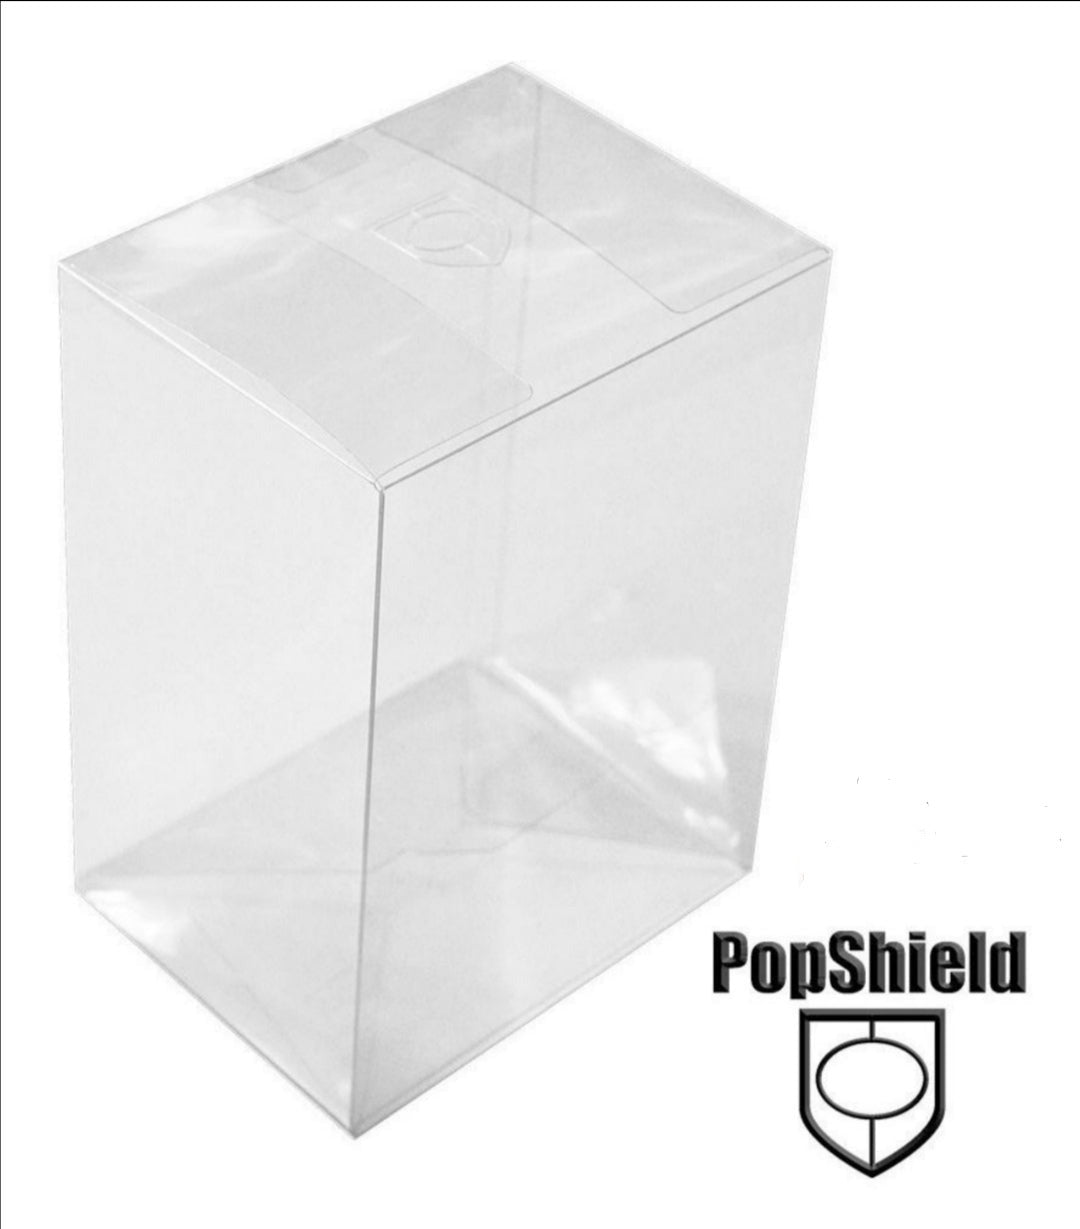 Protector para Funko pop regular -Popshield - Paquete de 50 piezas mayoreo